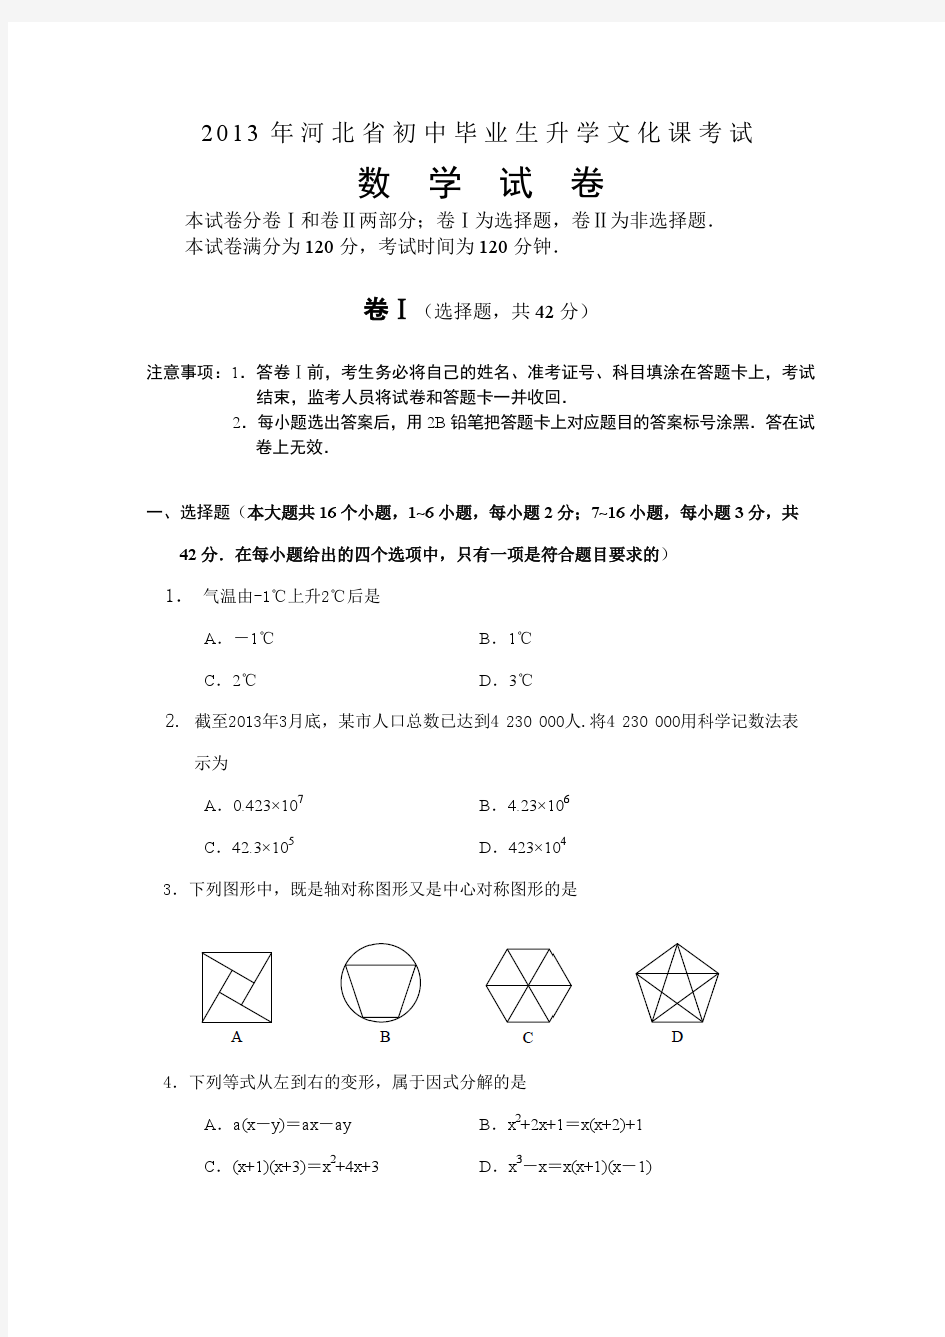 2007-2013年河北省数学中考题